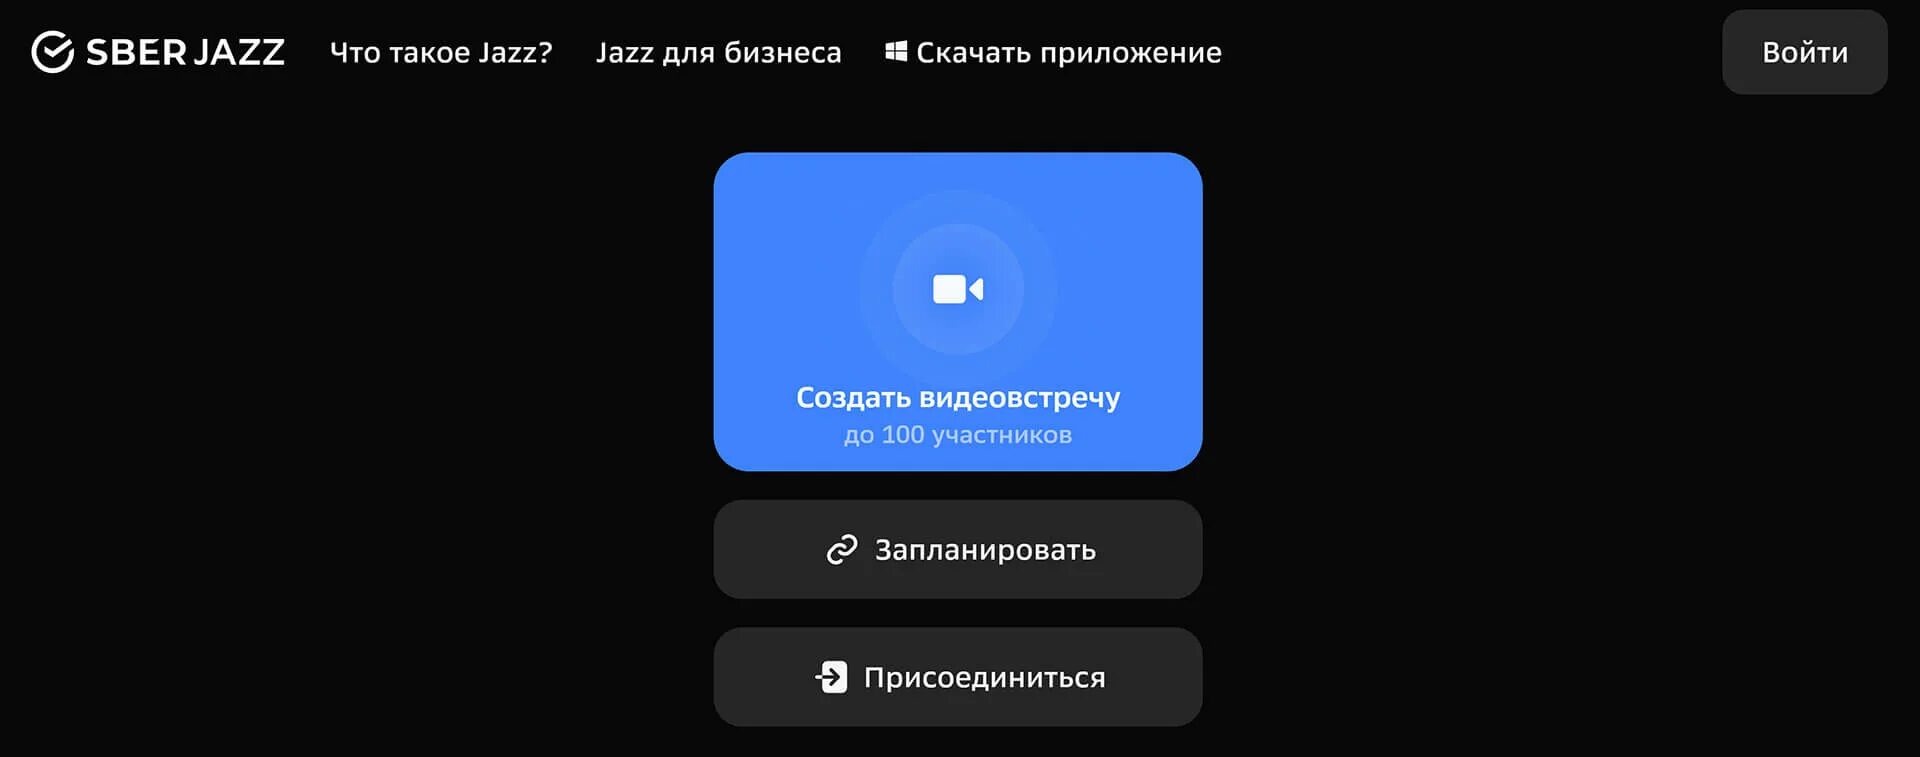 Сбер джаз. Джаз Сбер видеоконференция. Jazz приложение. Демонстрация экрана в джаз Сбер.